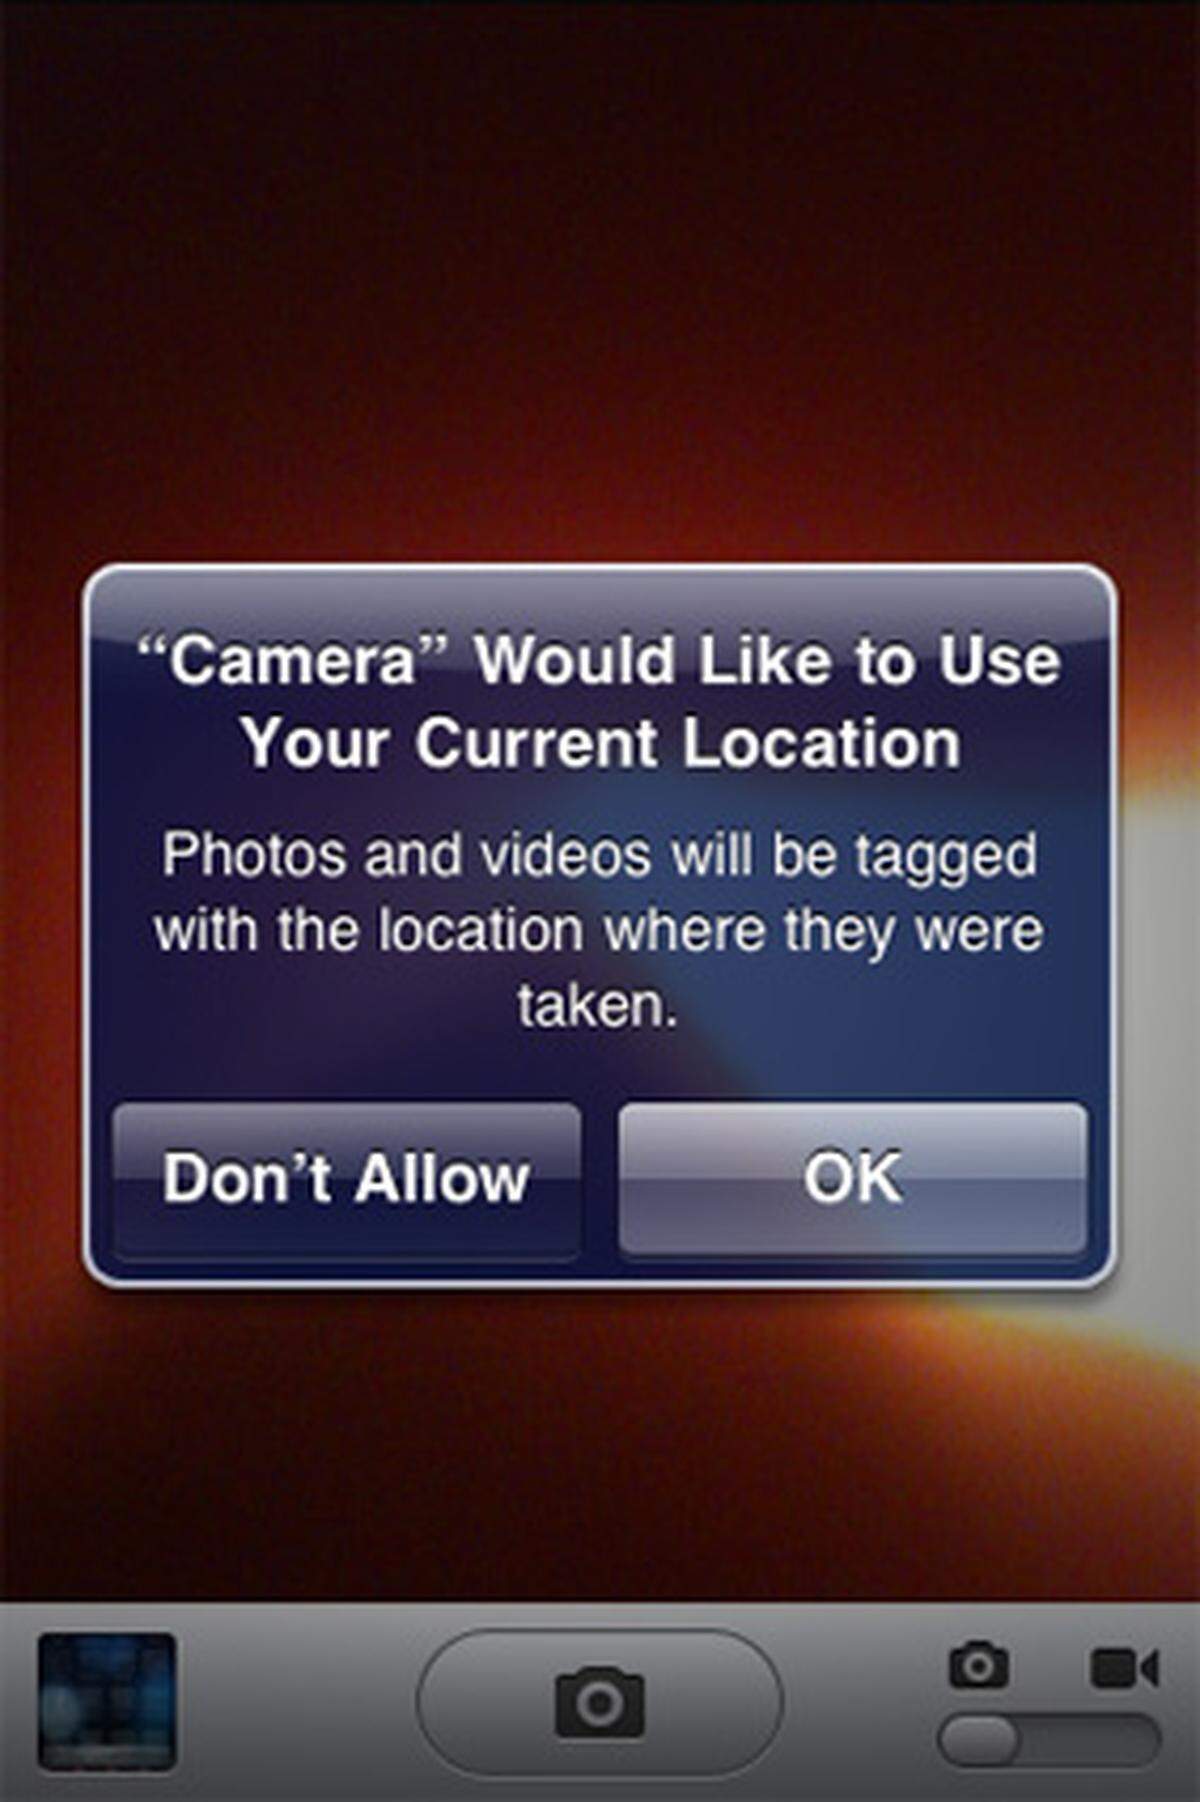 Mit iOS 4 kommen auch einige Erweiterungen für die iPhone-Kamera. Gleich zu Beginn wird man gefragt, ob man der Kamera erlauben darf, auf GPS-Daten zuzugreifen. Damit aktiviert man die GeoTagging-Funktionalität des Systems.